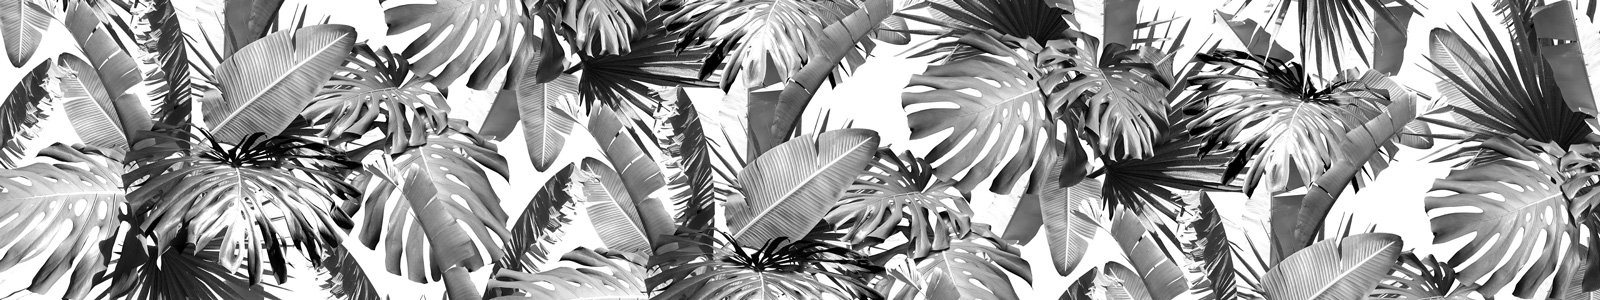 №6812 - Листья тропических растений в черно-белом варианте